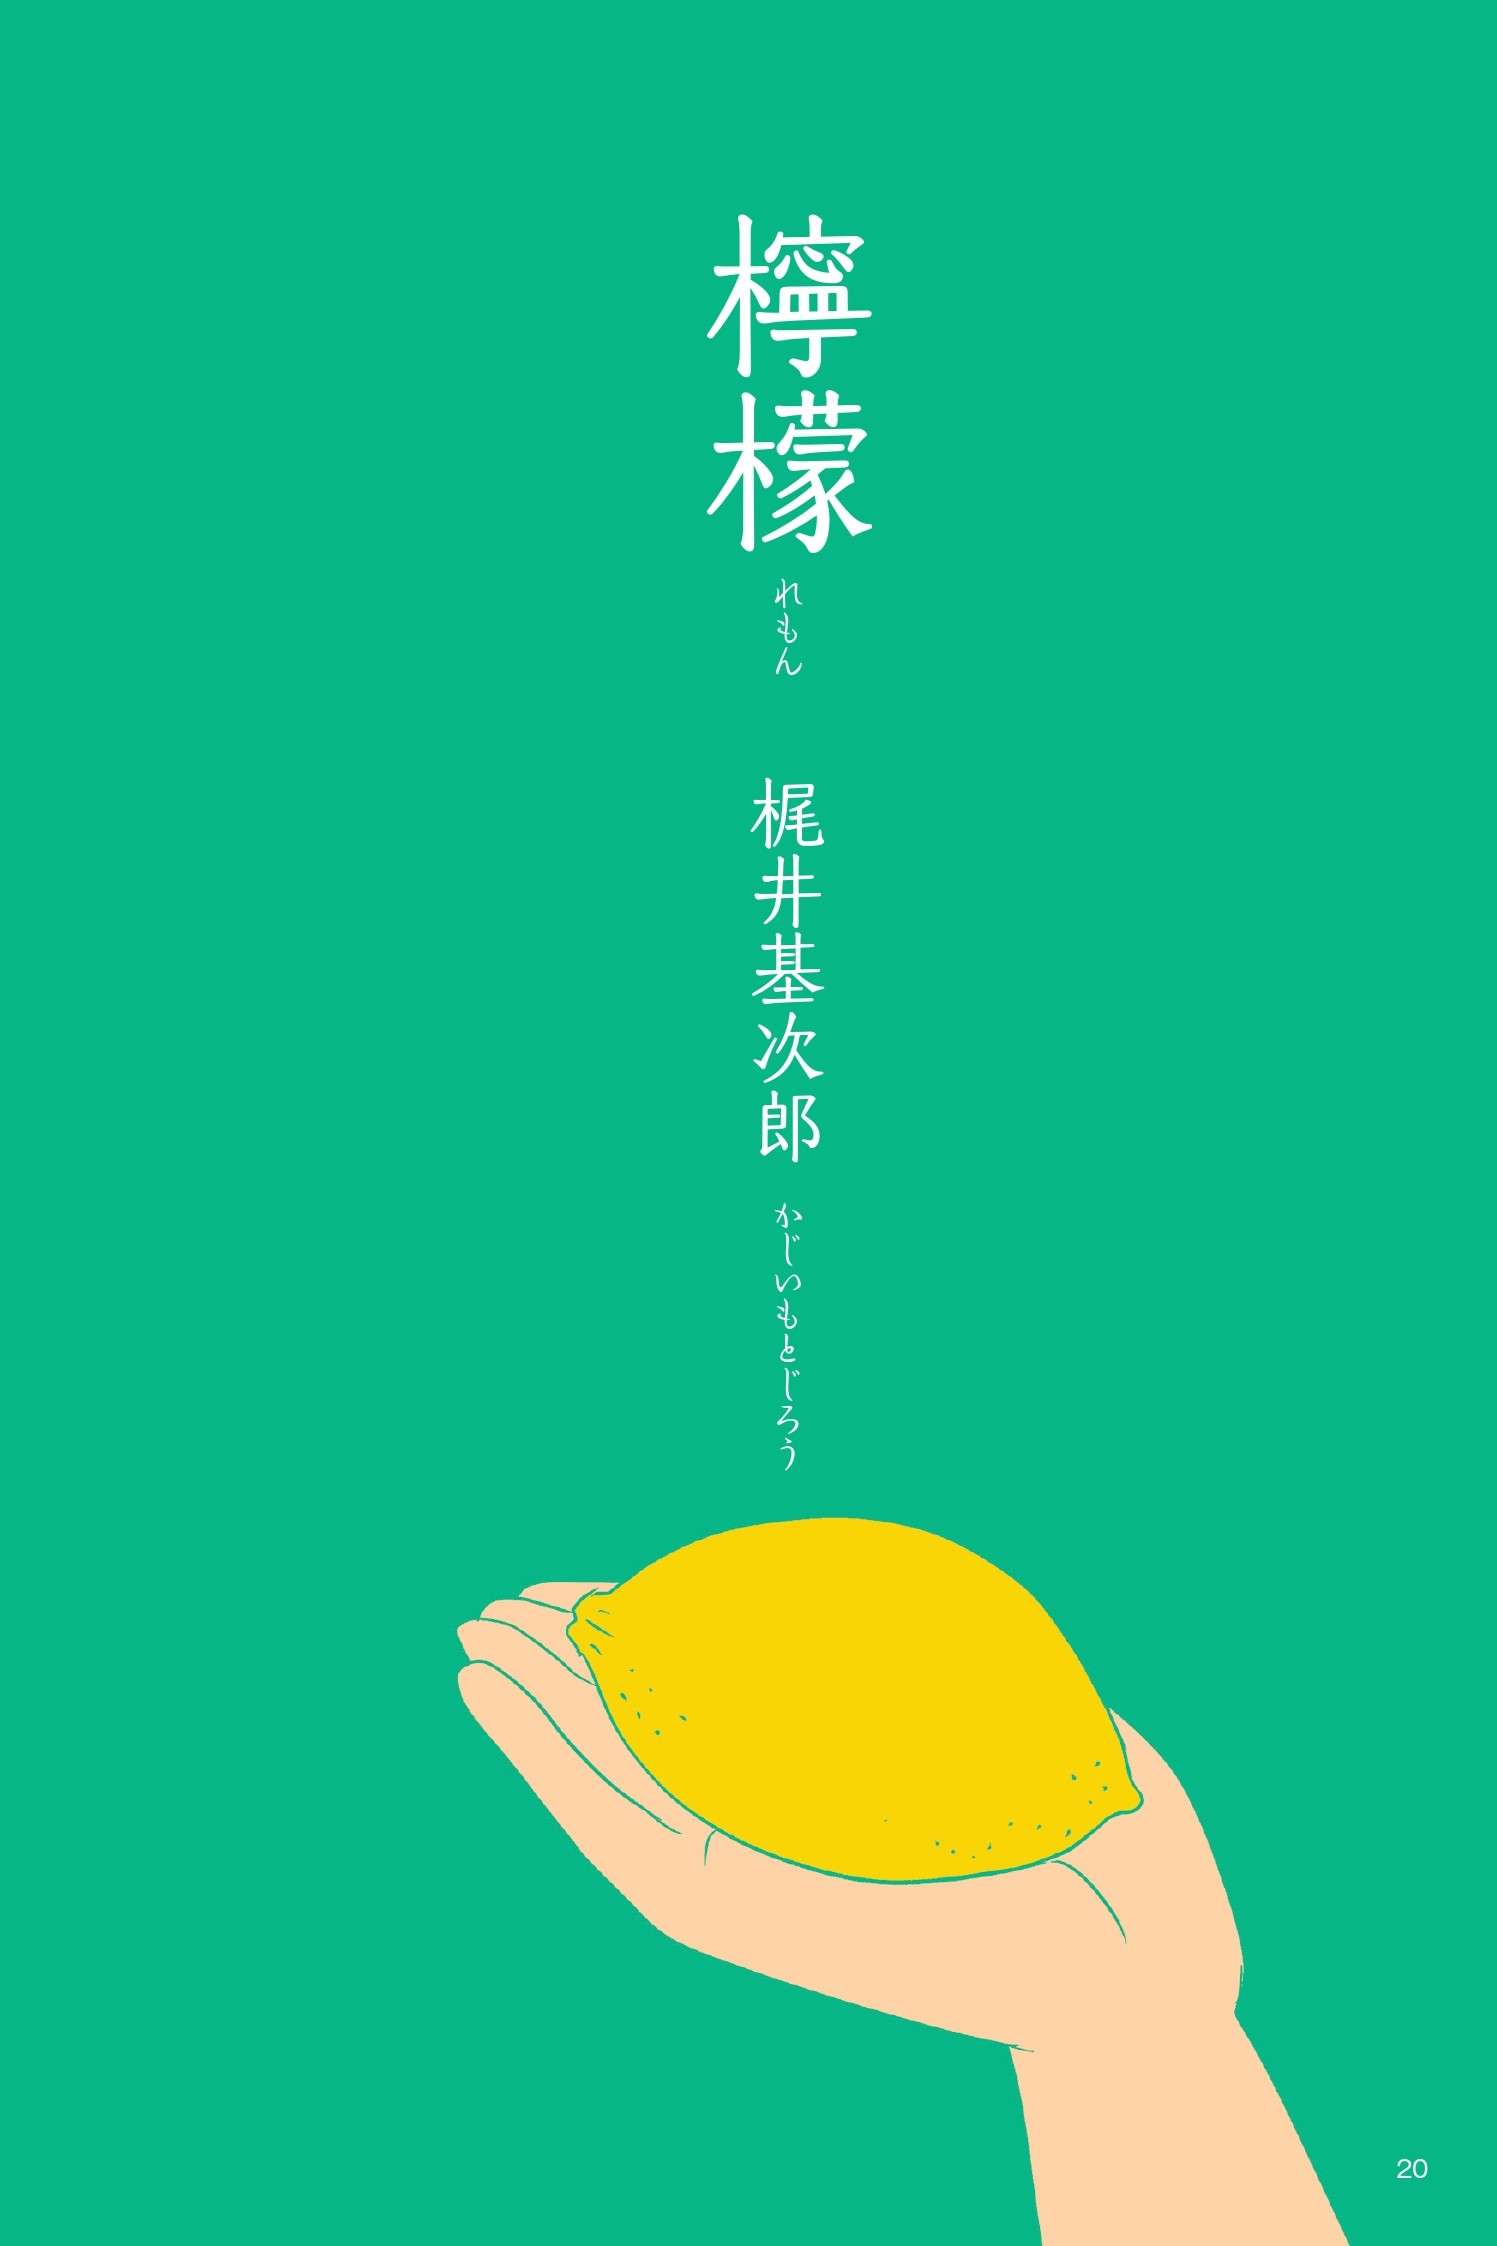 憂鬱な気持ちの男が、檸檬を見つけたことでどう変わった？ 梶井基次郎『檸檬』／山田全自動の日本文学でござる 日本文学でござる②_imgs-01.jpg